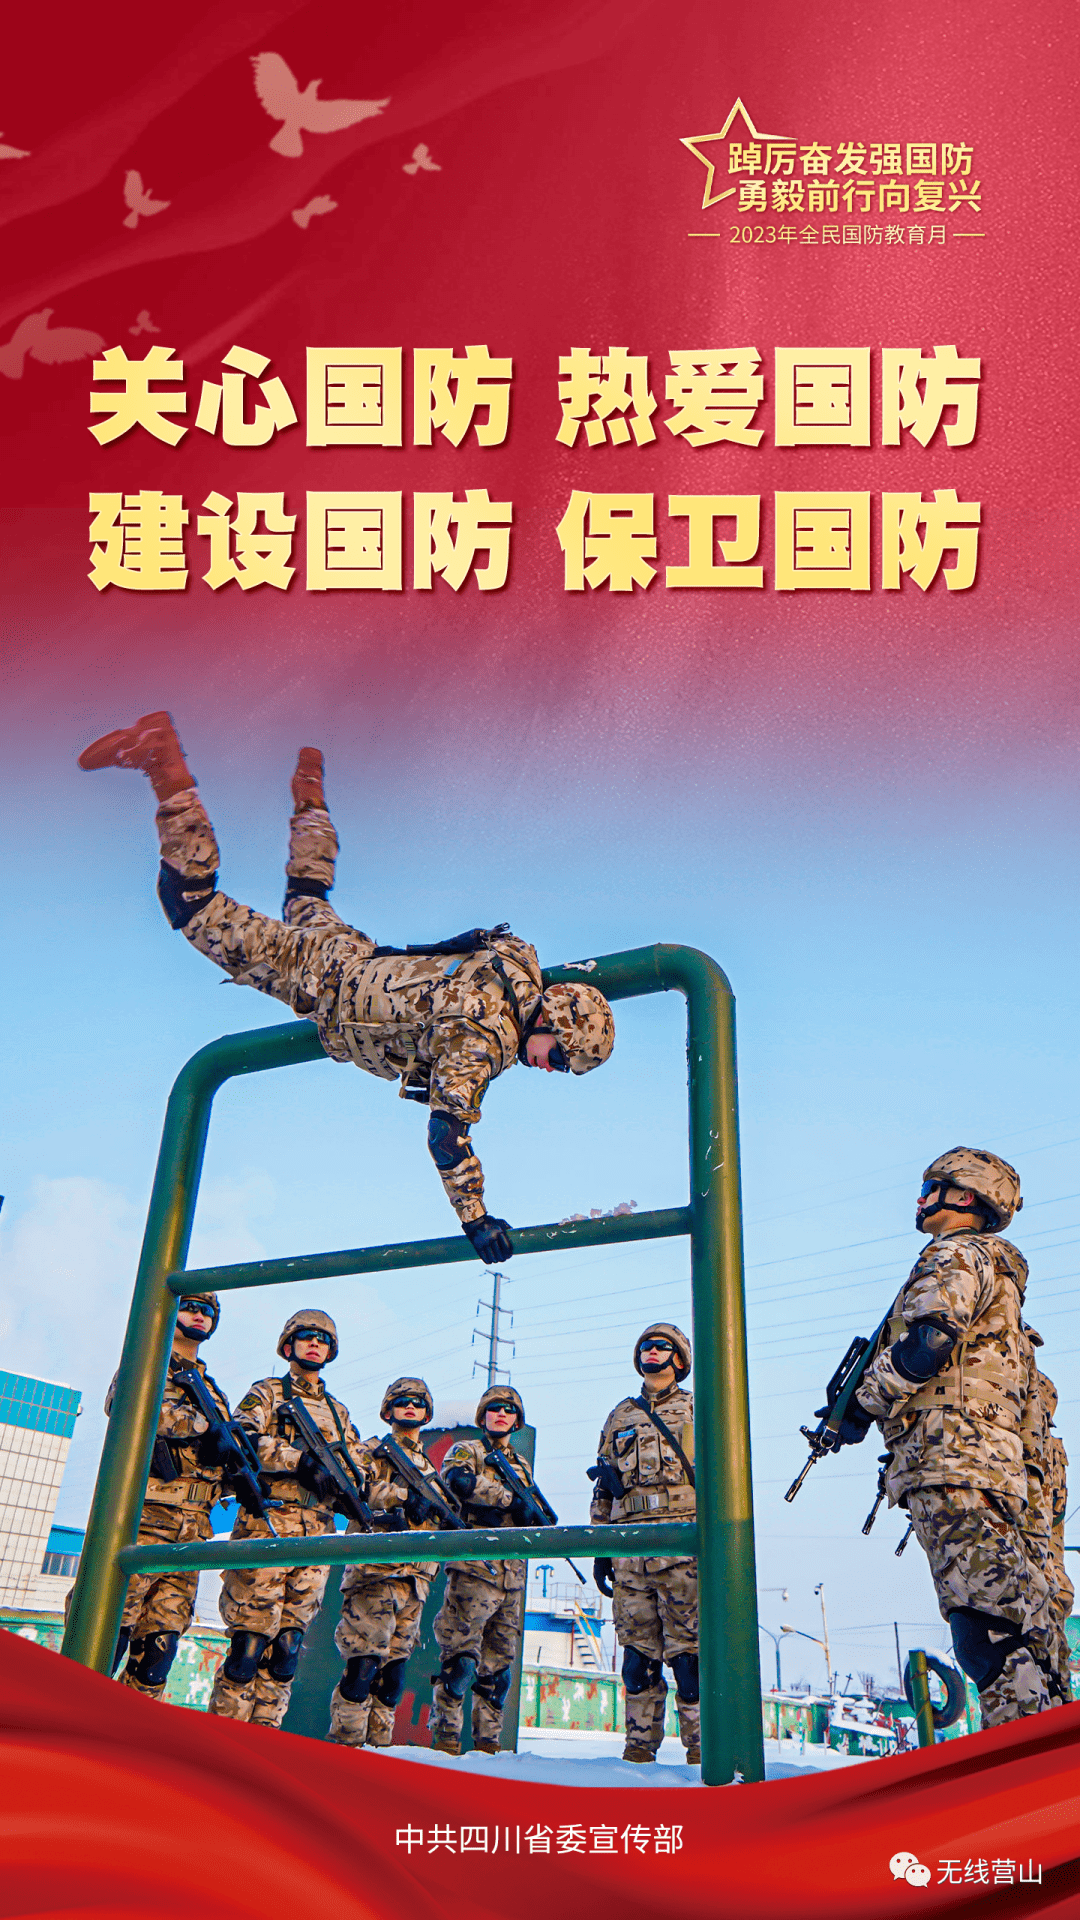 超燃海报丨2023年全民国防教育月:踔厉奋发强国防 勇毅前行向复兴